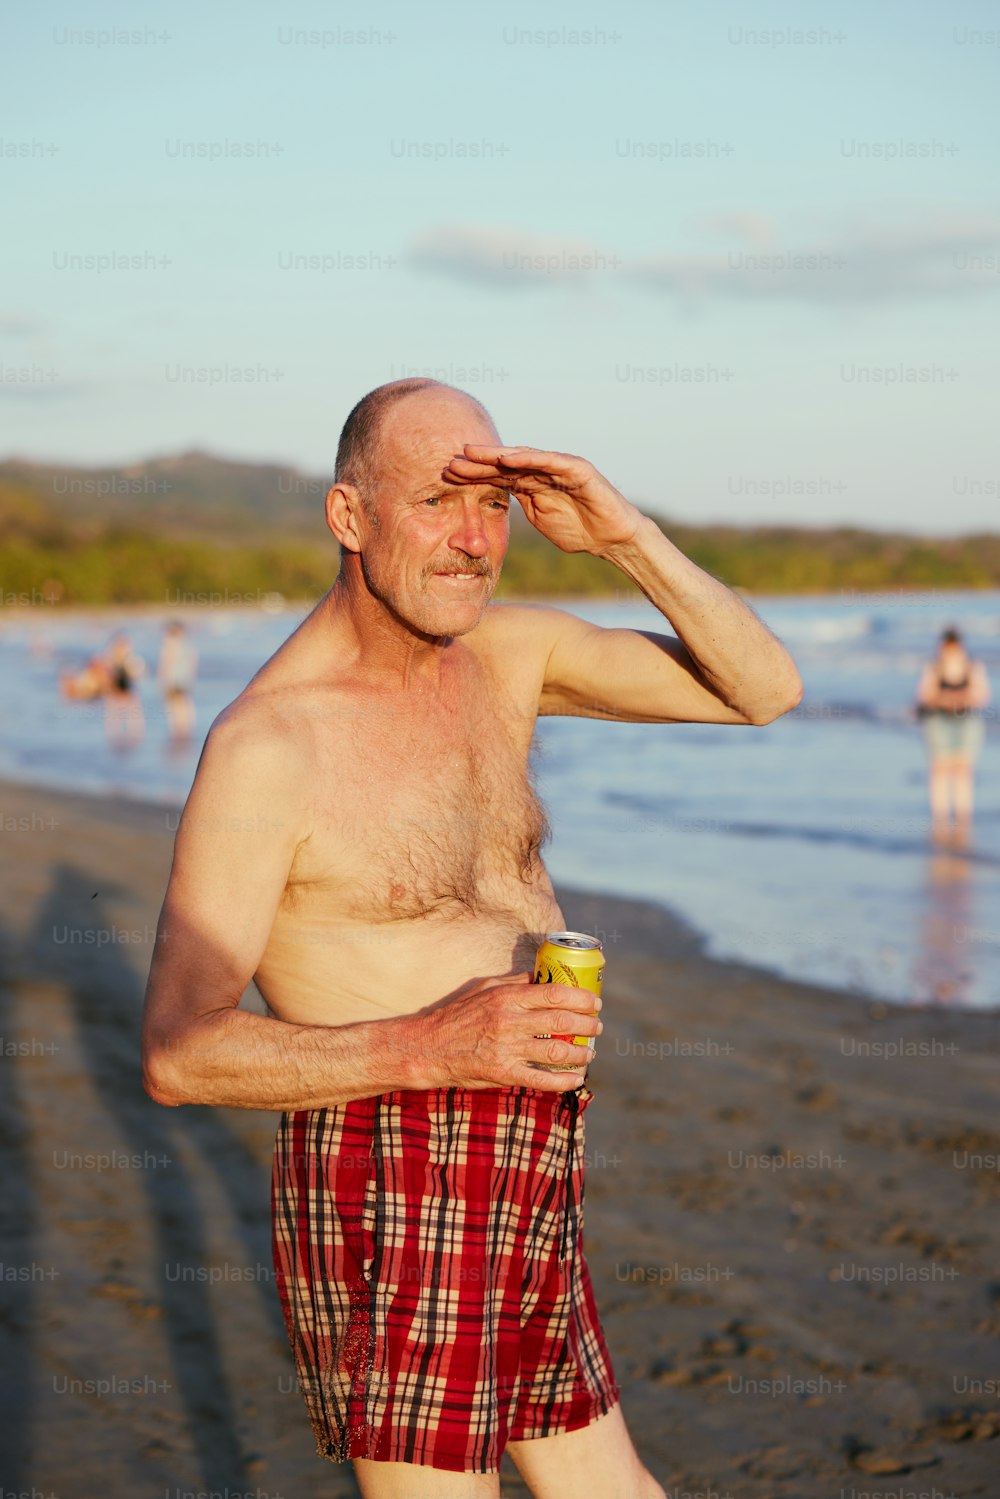 Un hombre parado en una playa sosteniendo una taza de café